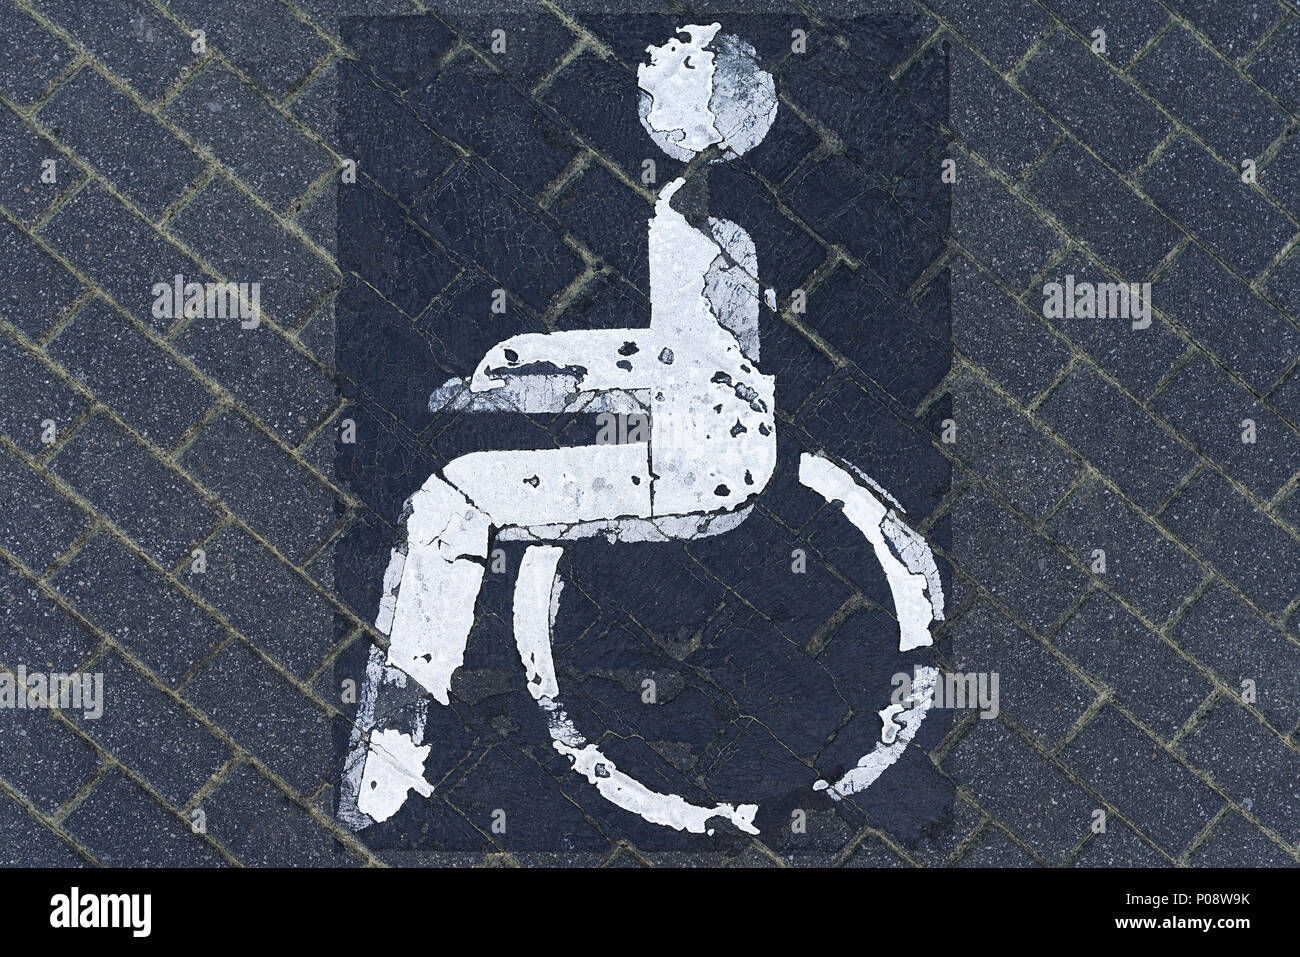 Photo symbole handicapés, parking, Thuringe, Allemagne Banque D'Images